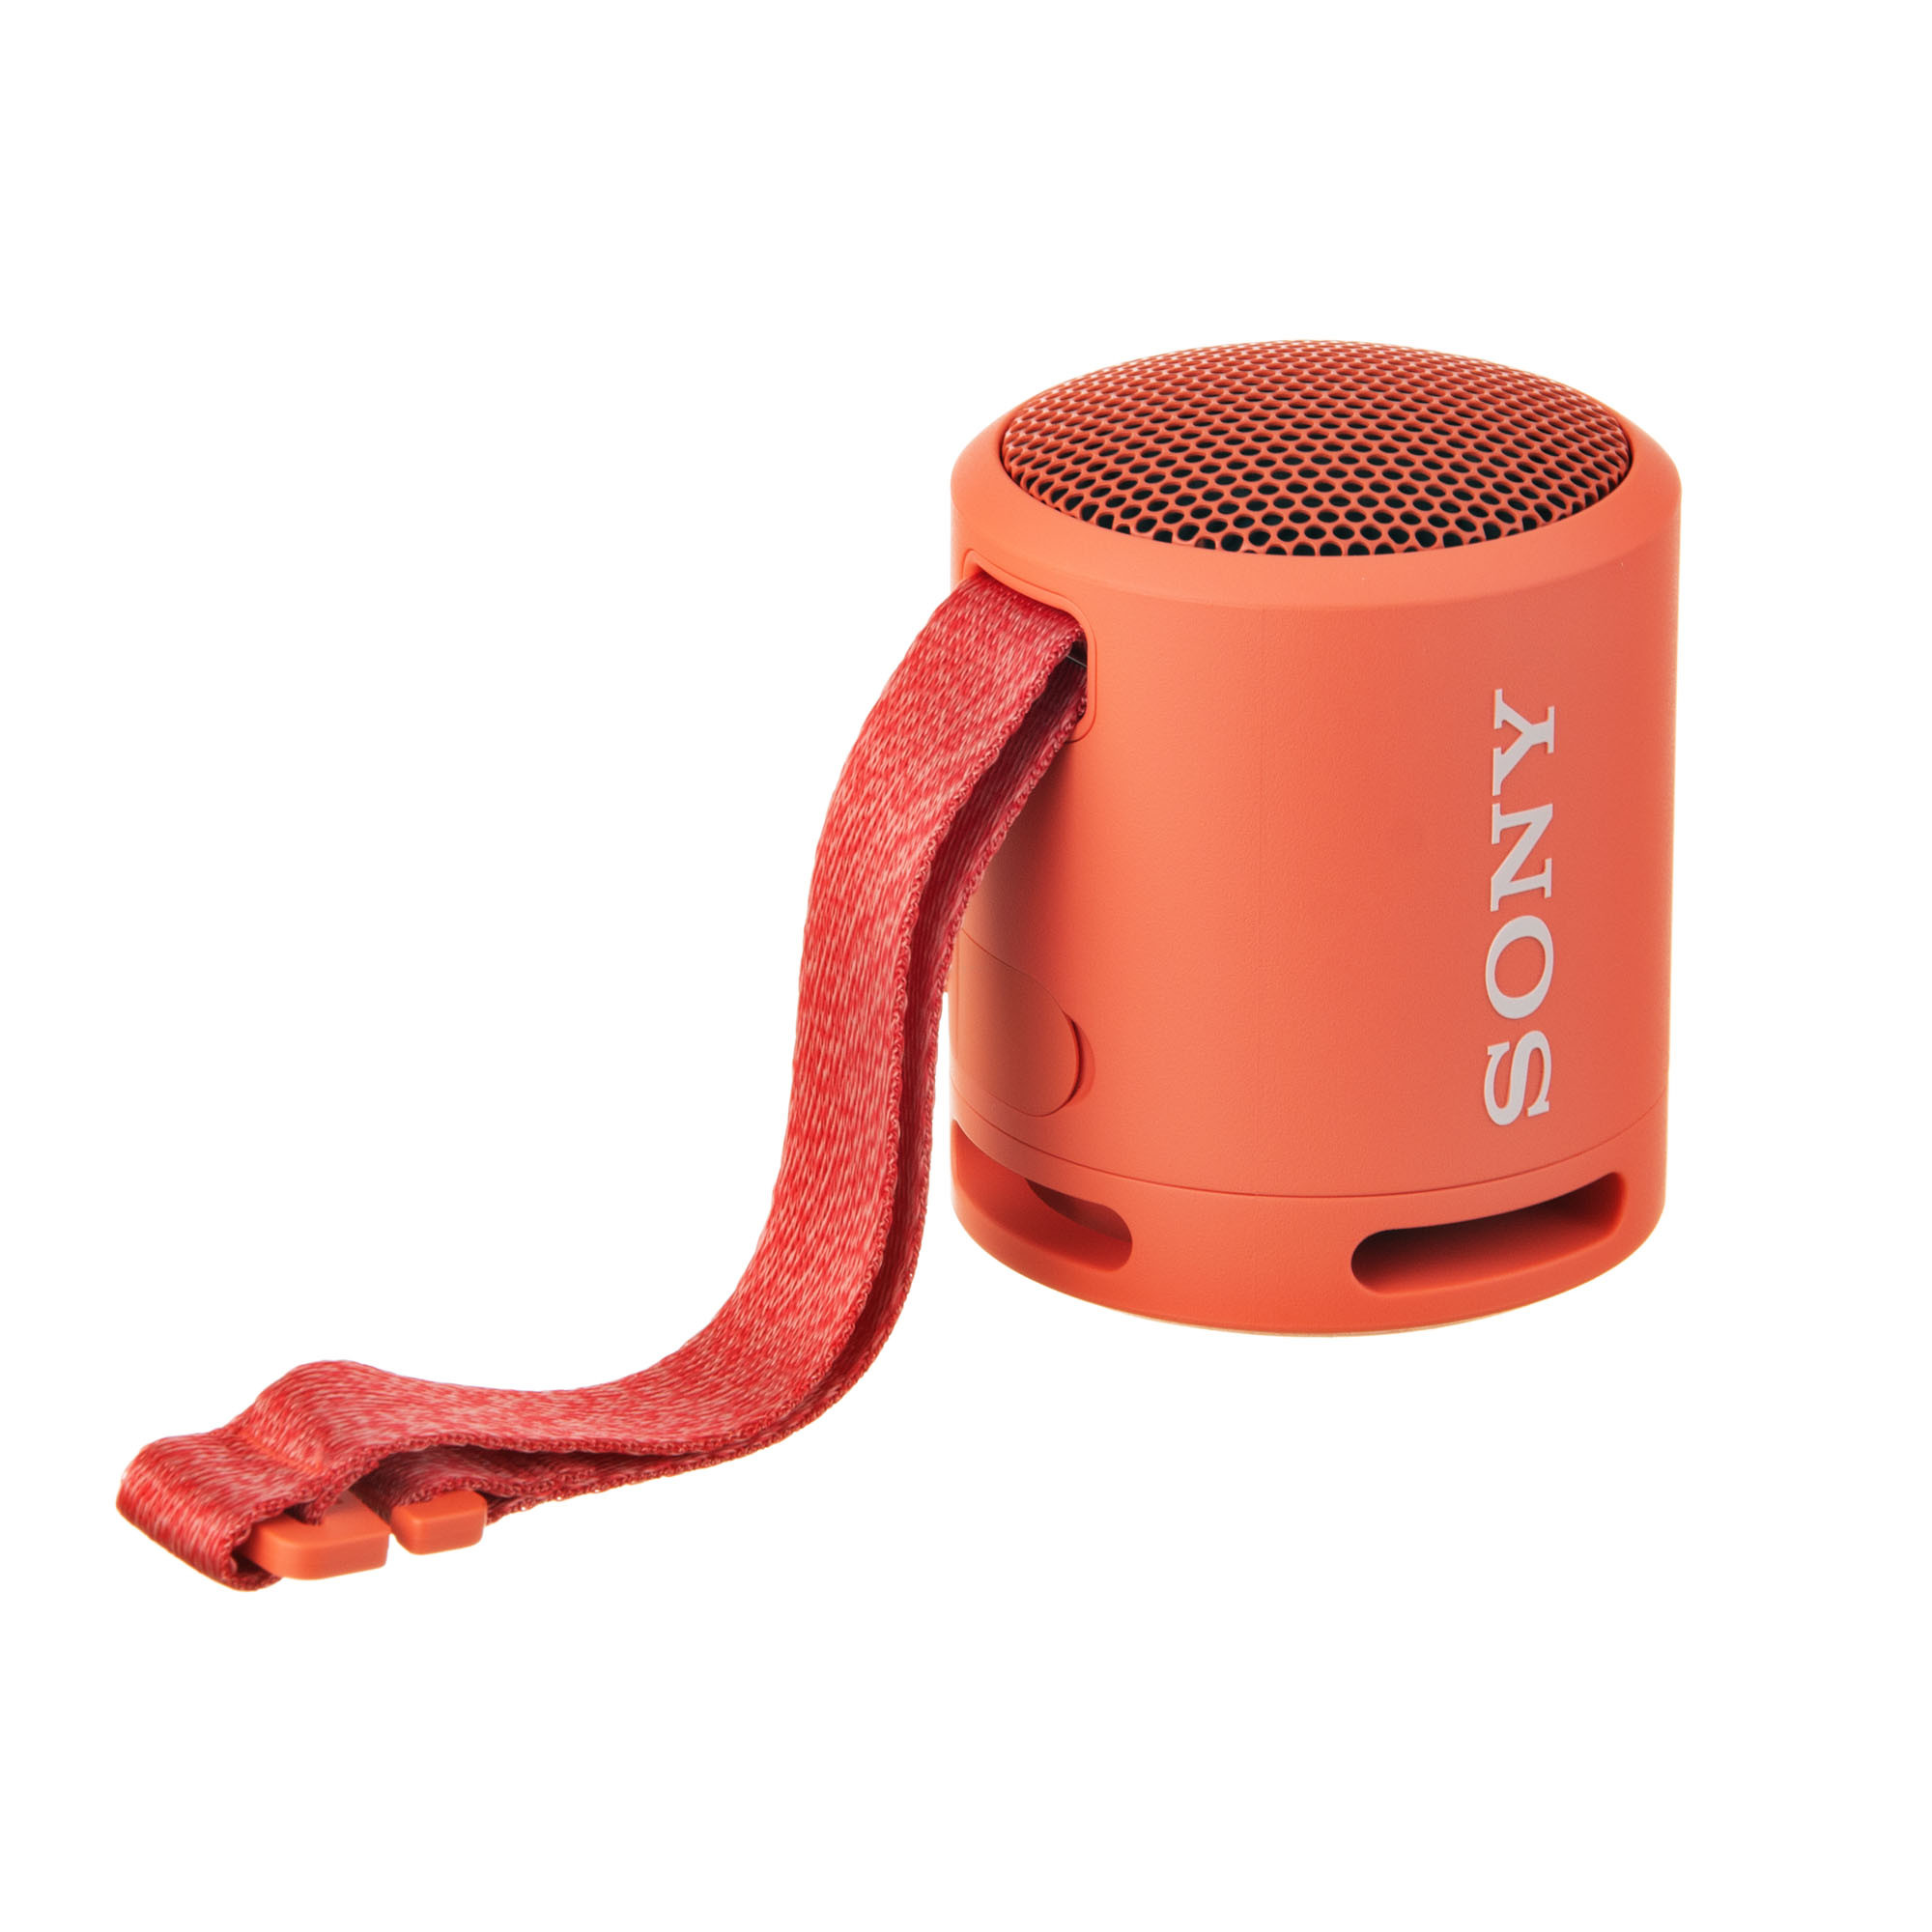 Altavoz SONY Inalámbrico Bluetooth Aux Micrófono Extra Bass y Resistente al  Agua Rojo